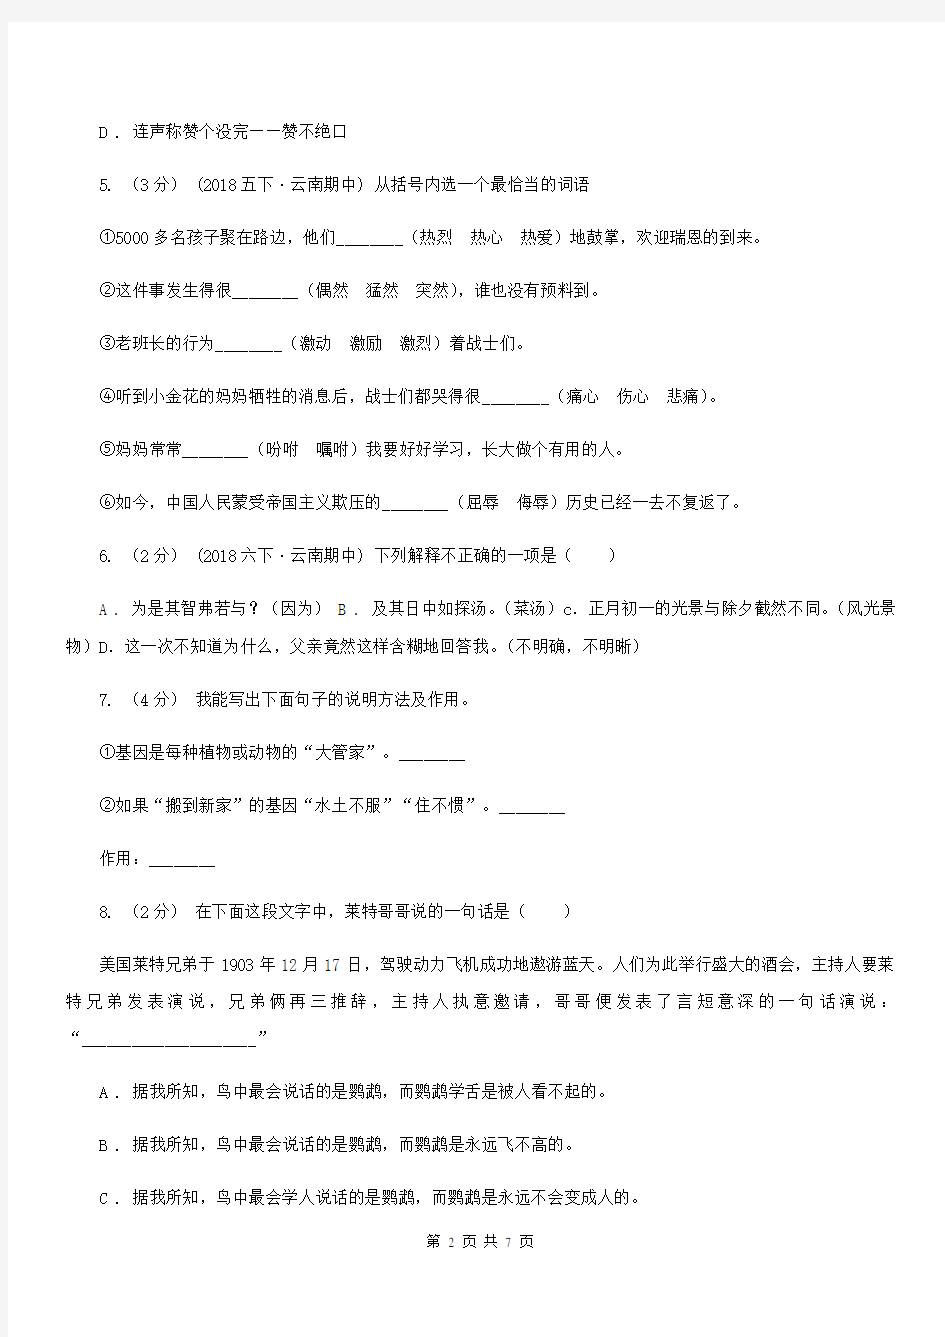 安徽省安庆市六年级上册语文期末测试卷(C)